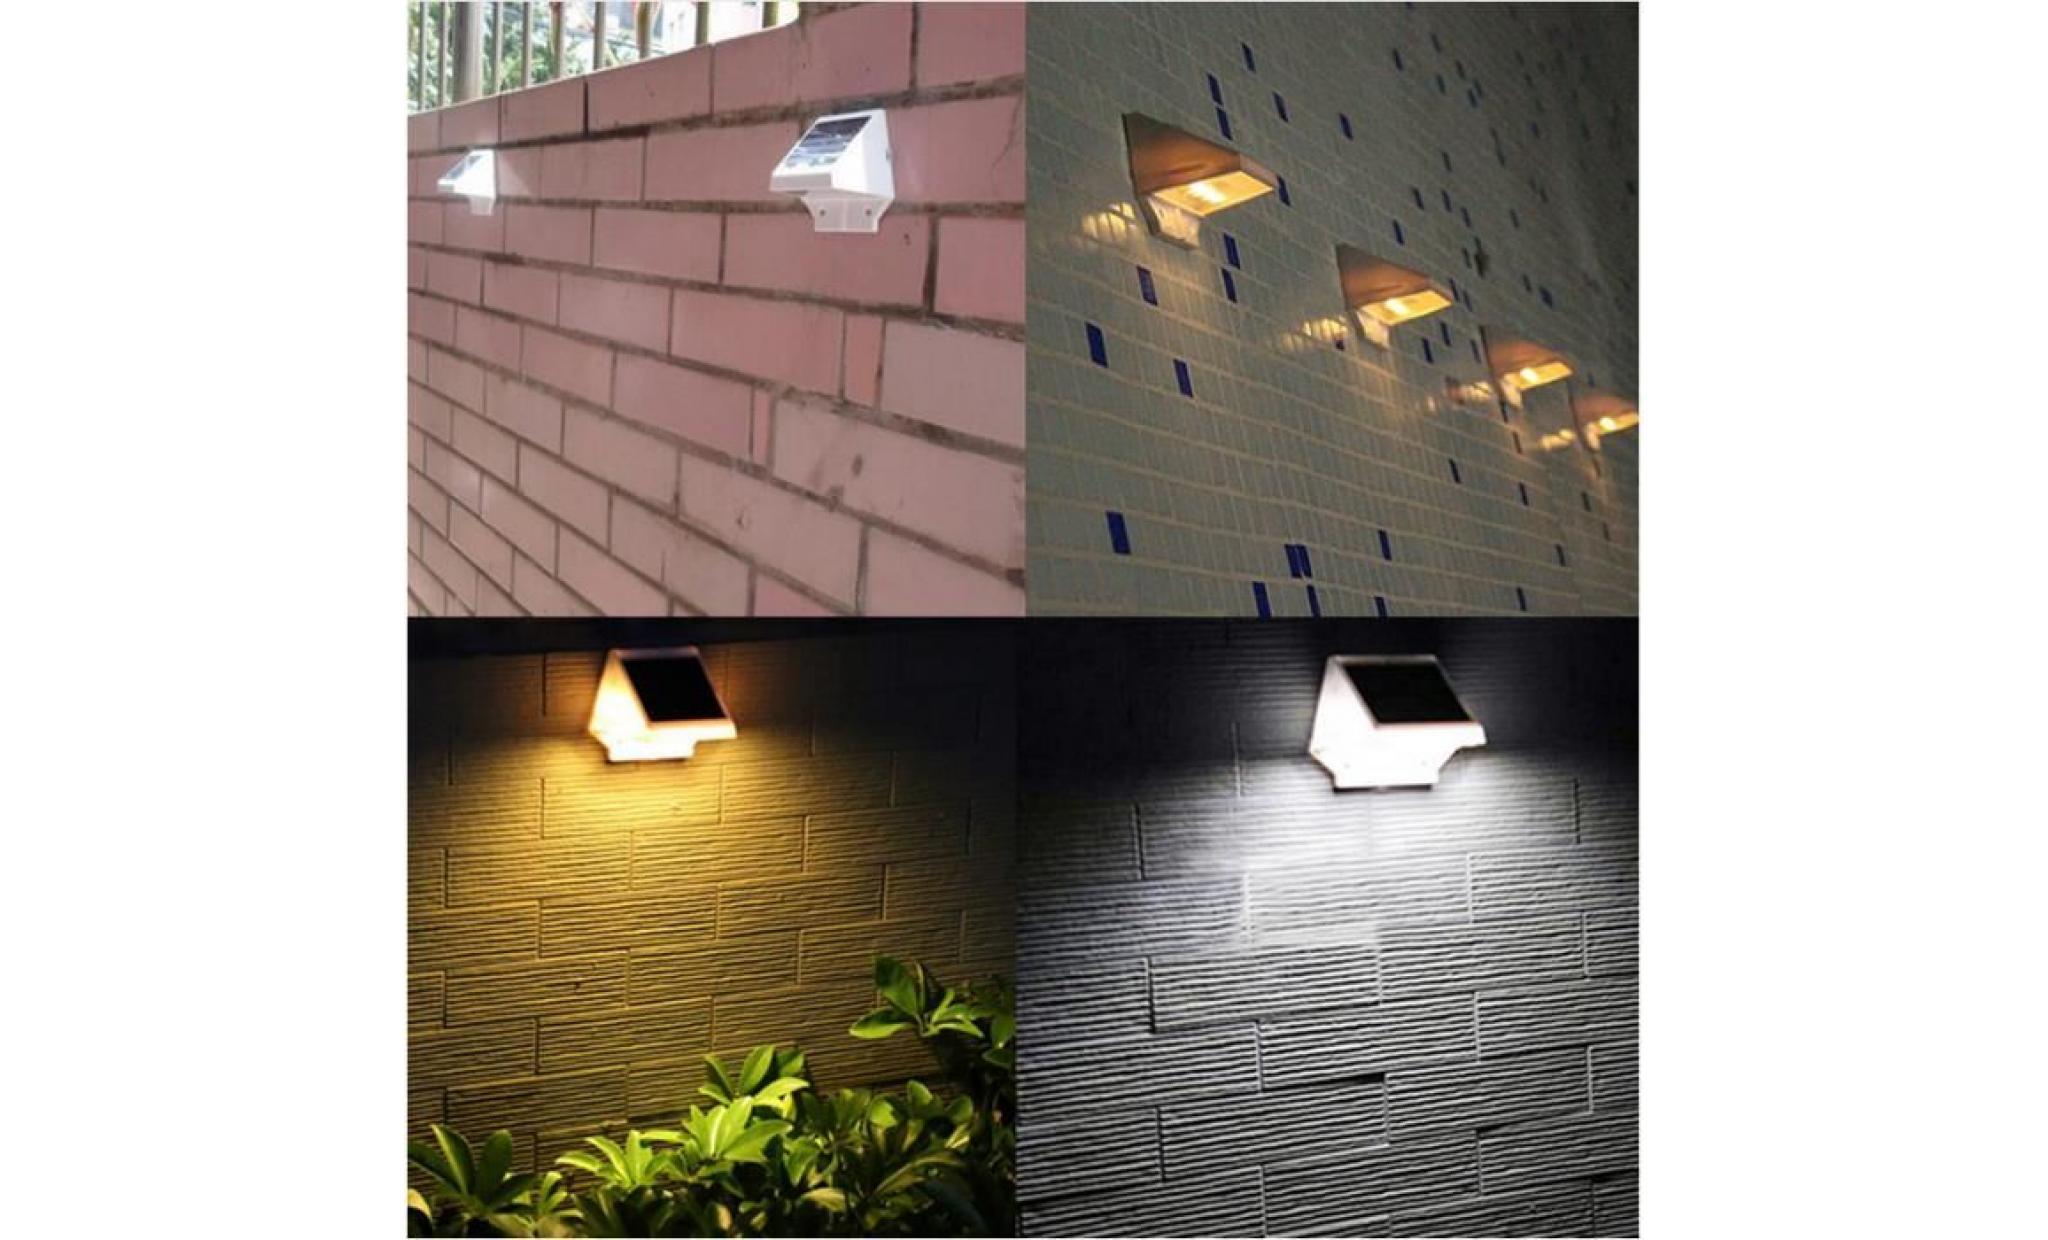 led lumière solaire imperméable mur lampe avec contrôle de la lumière froid / chaud blanc home garden mur lampe pas cher